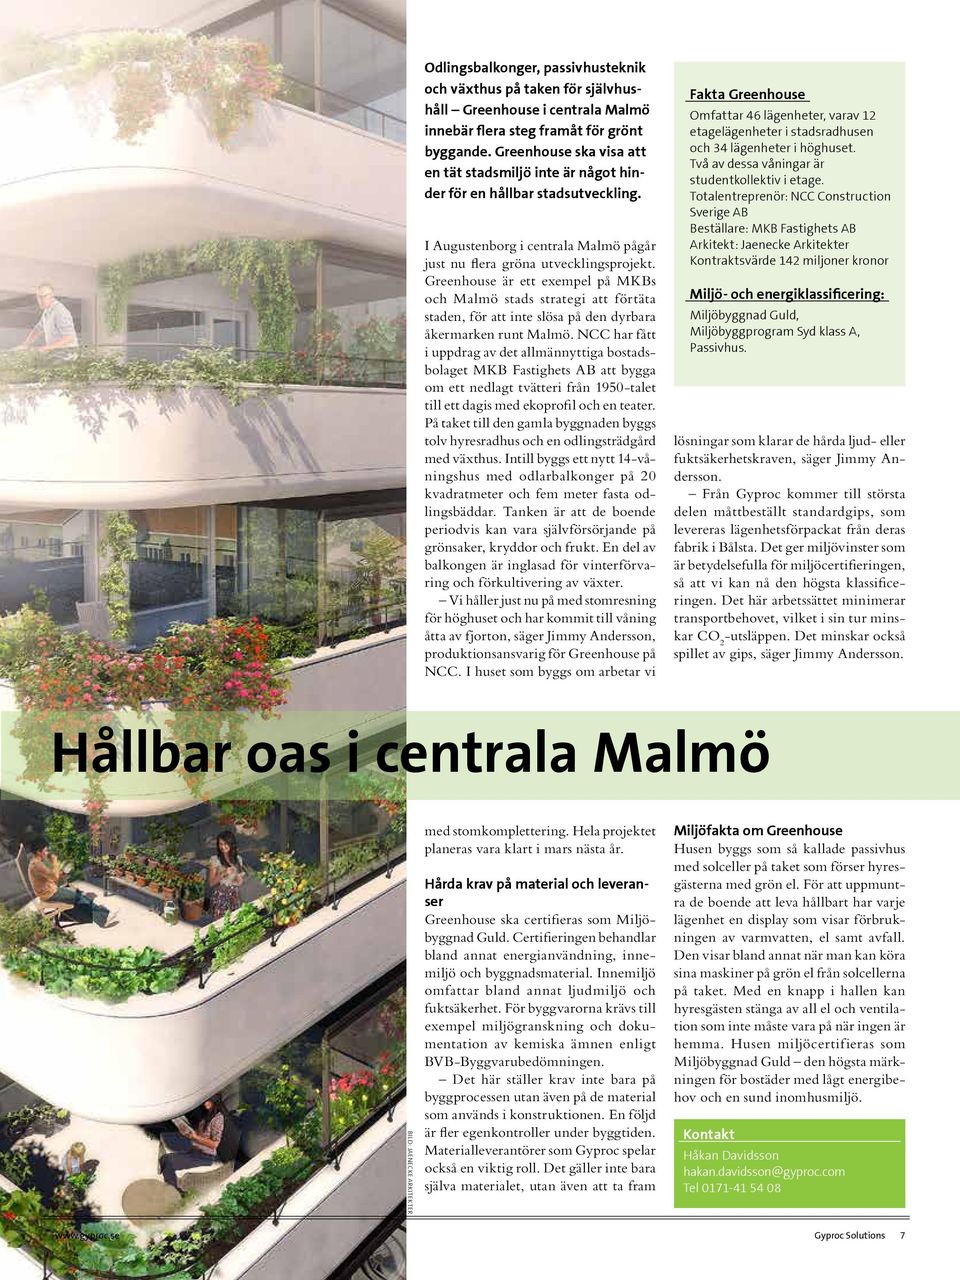 Greenhouse är ett exempel på MKBs och Malmö stads strategi att förtäta staden, för att inte slösa på den dyrbara åkermarken runt Malmö.